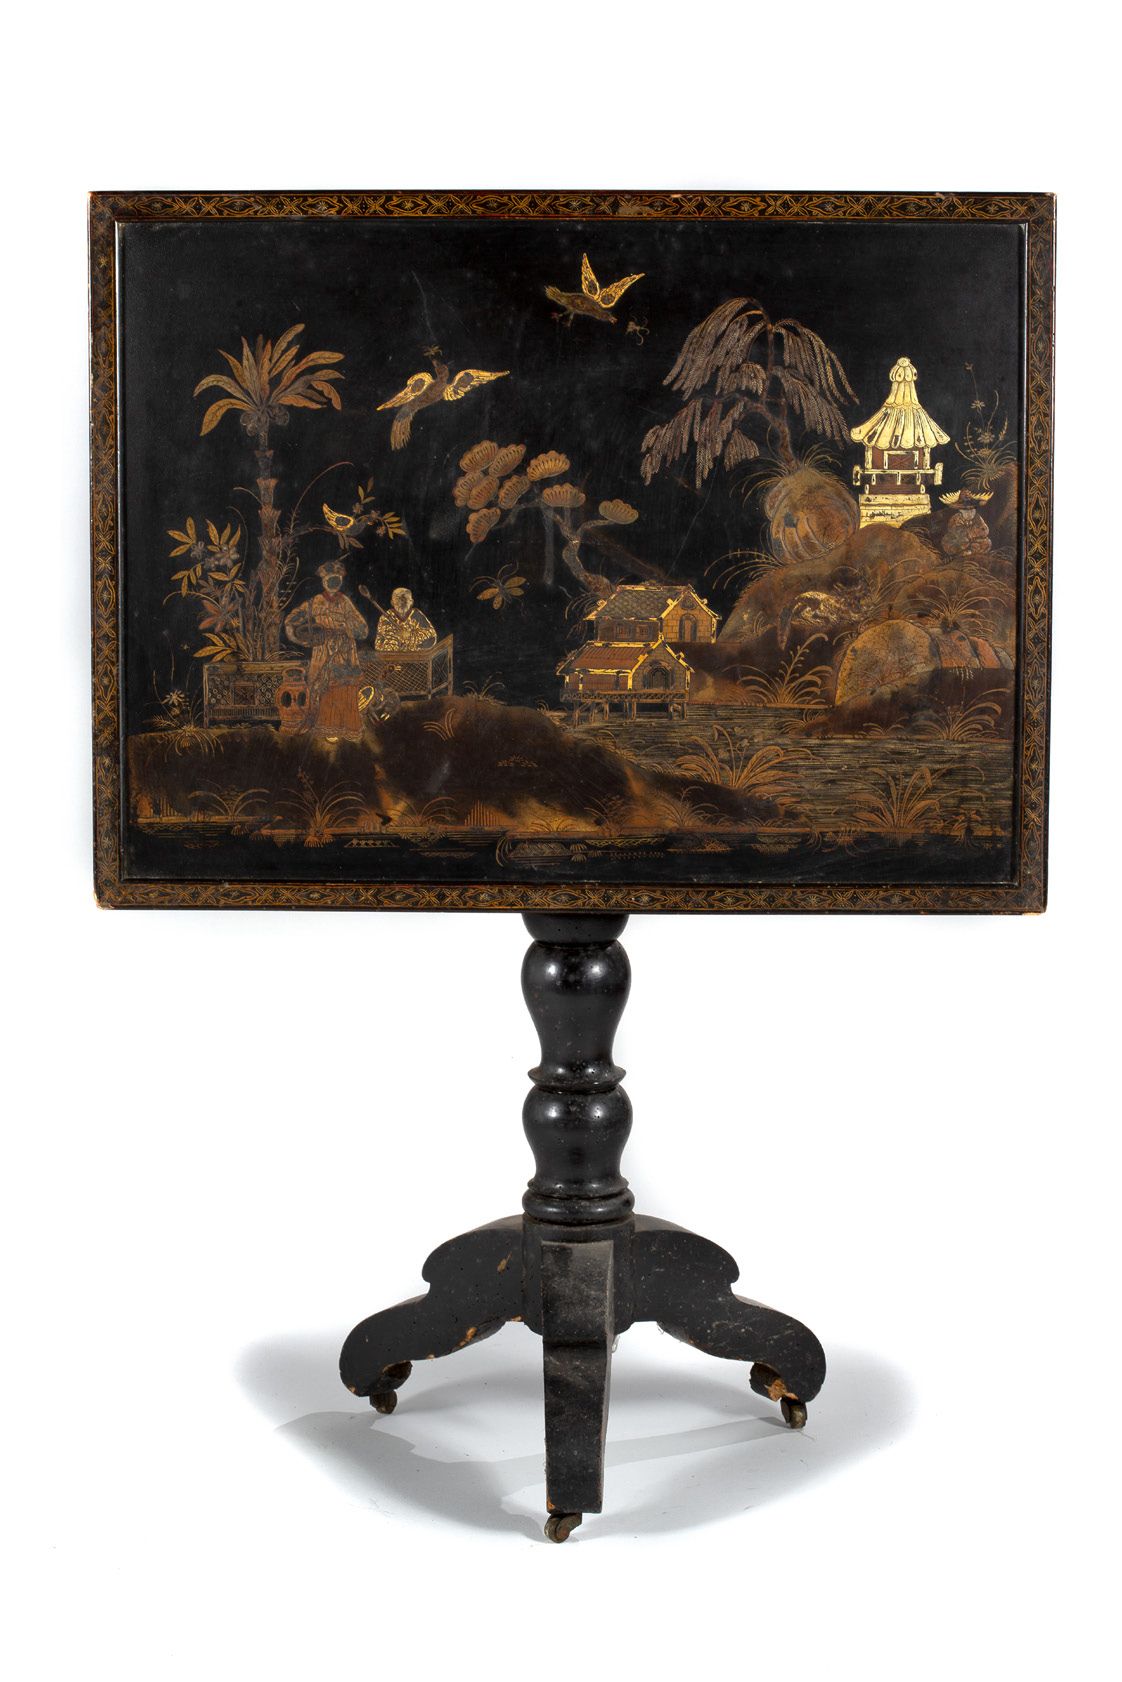 Chine du sud fin XIXe siècle 
深黑色木质的小三角桌，折叠式桌面，上面有彩绘镀金装饰，一个女人在两只鹅的陪伴下从一个坐在家具后面的男&hellip;